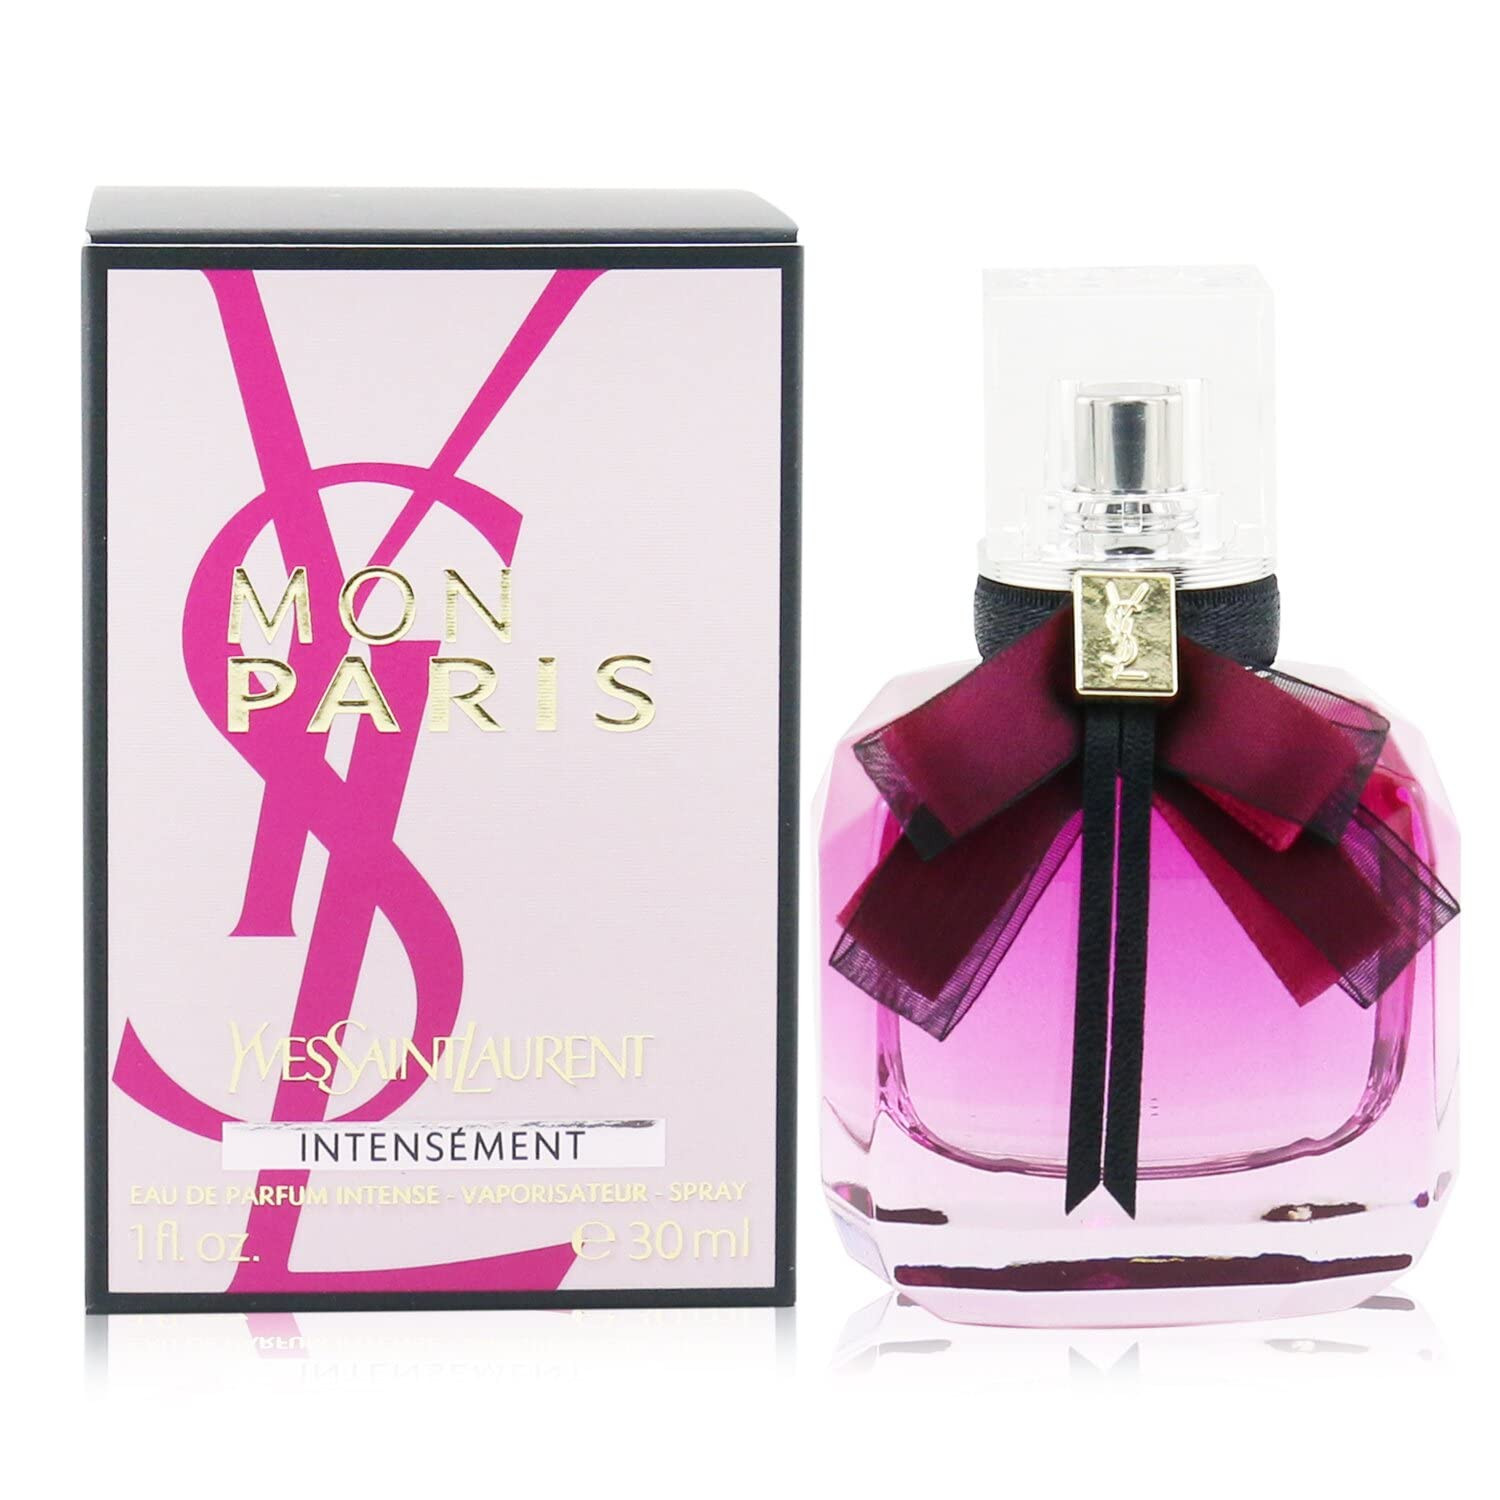 Mon Paris Intensement Eau de Parfum Spray by Yves Saint Laurent - 3 oz